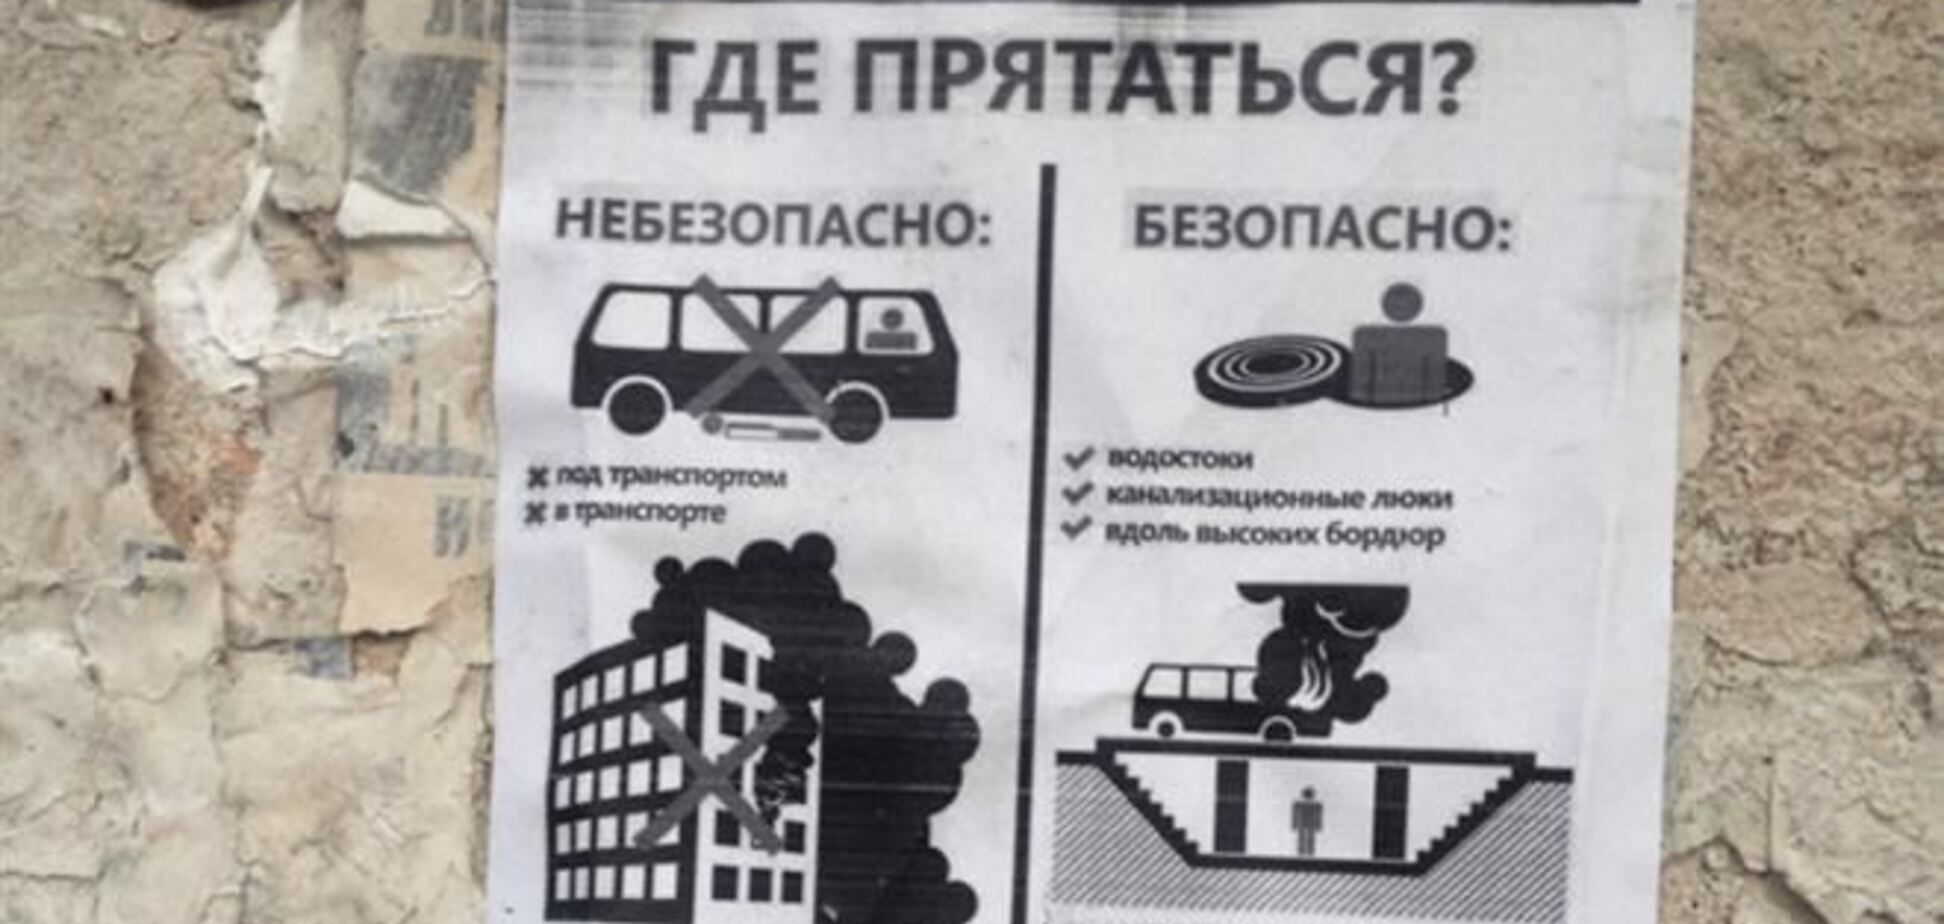 Луганск наводнили листовки сепаратистов: 'Где прятаться, если артобстрел?'